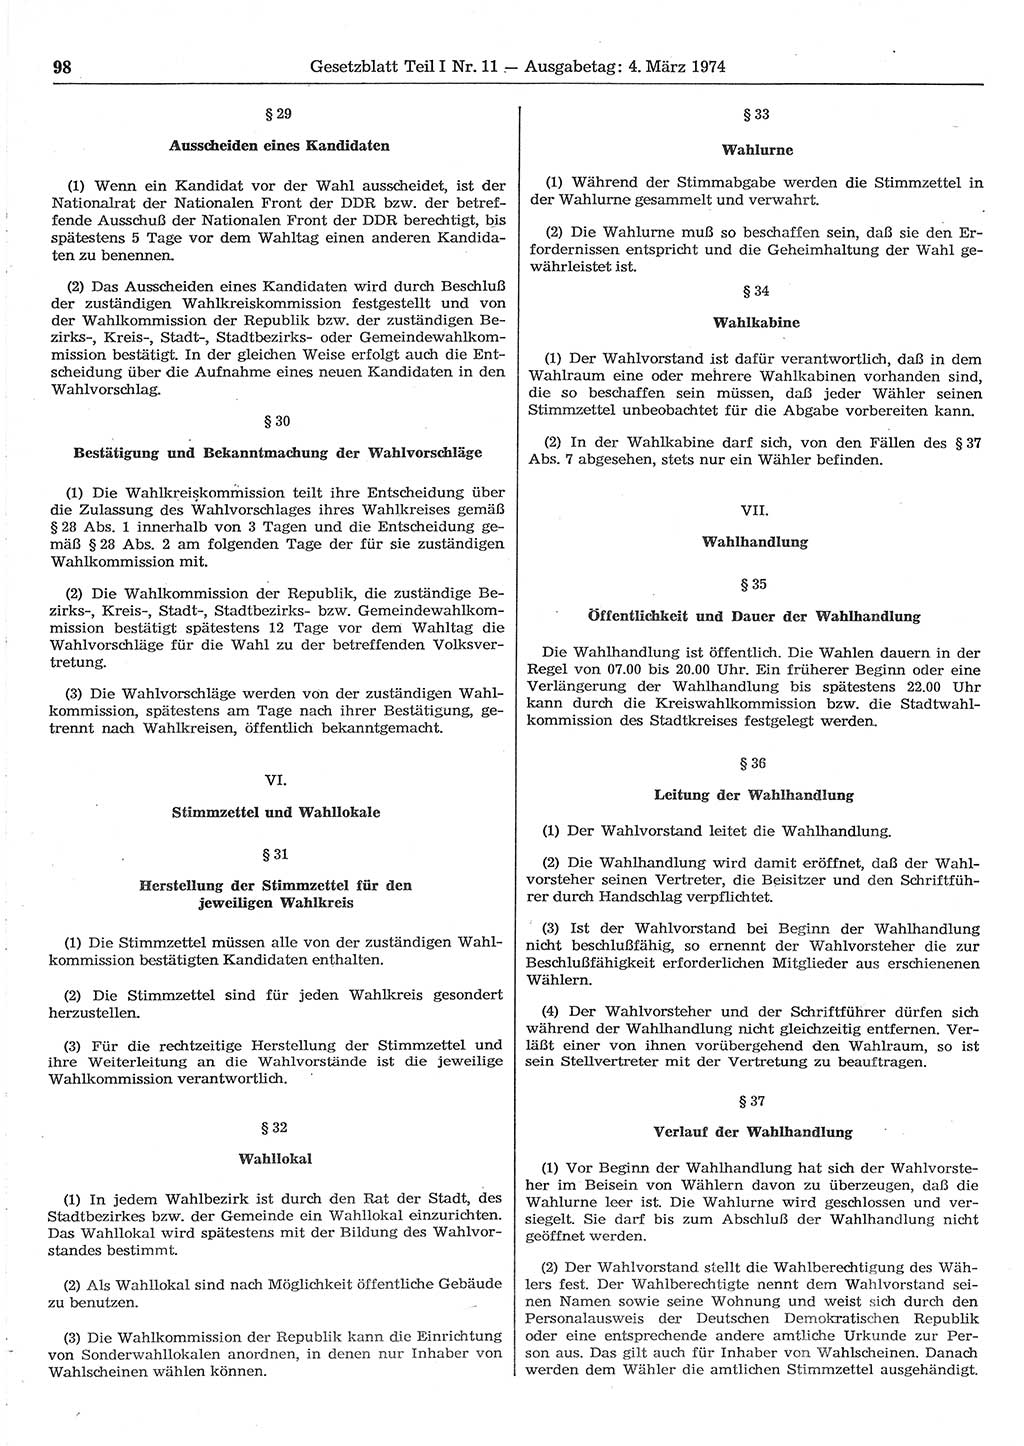 Gesetzblatt (GBl.) der Deutschen Demokratischen Republik (DDR) Teil Ⅰ 1974, Seite 98 (GBl. DDR Ⅰ 1974, S. 98)